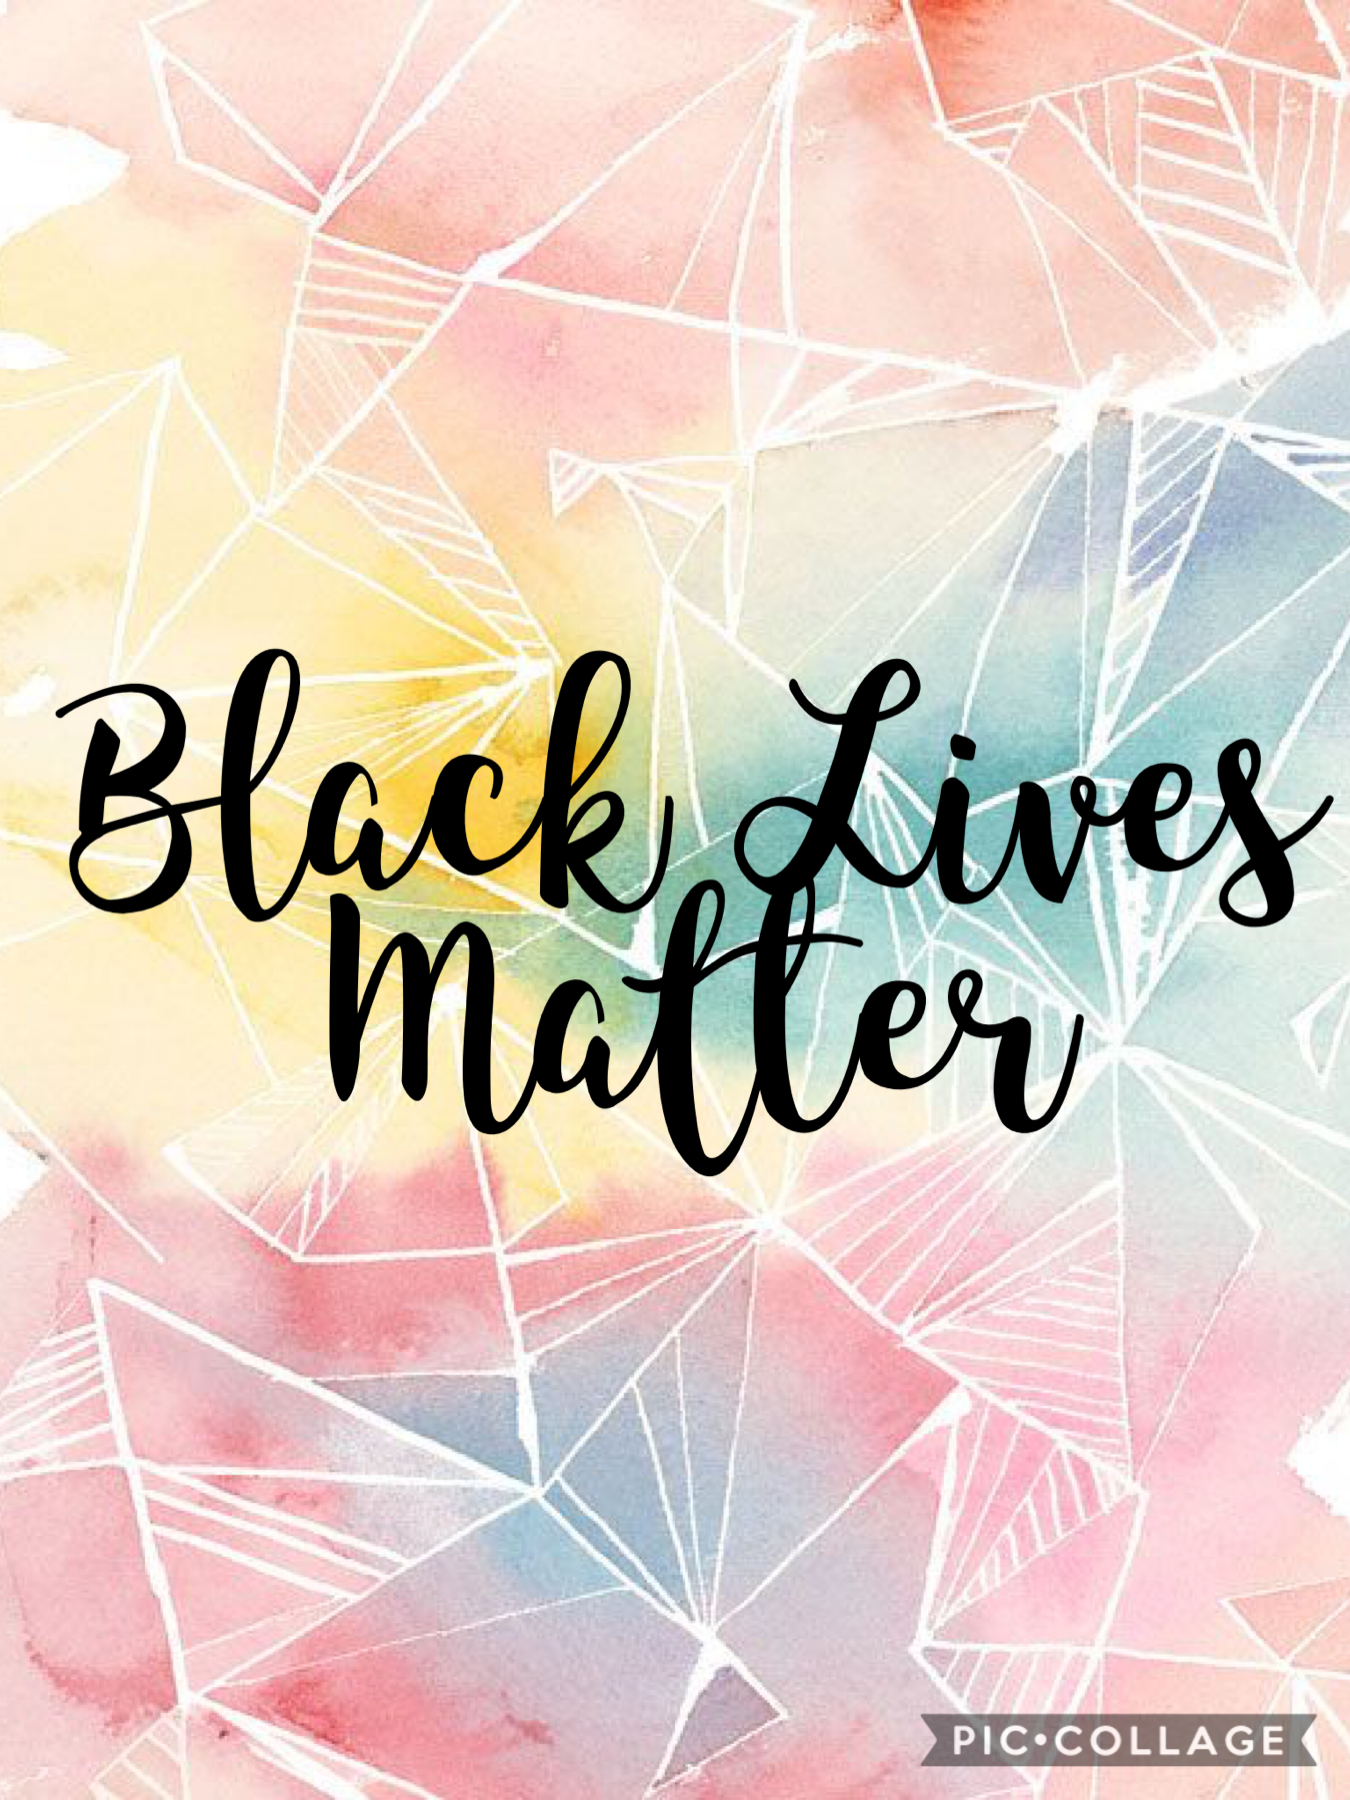 No lives matter until black lives matter